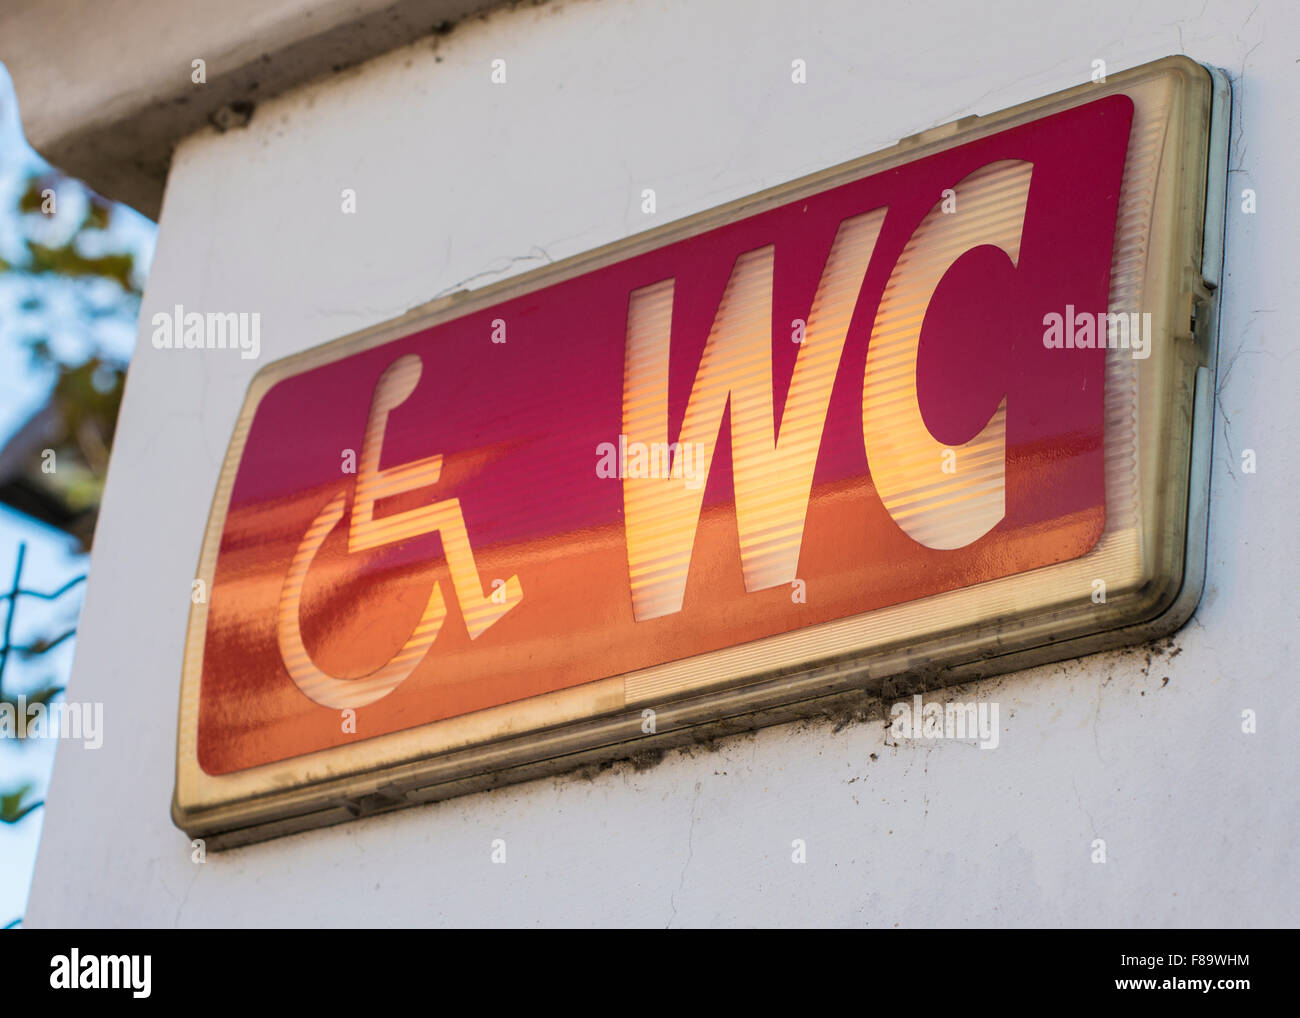 Handicap restroom illuminated sign Stock Photo